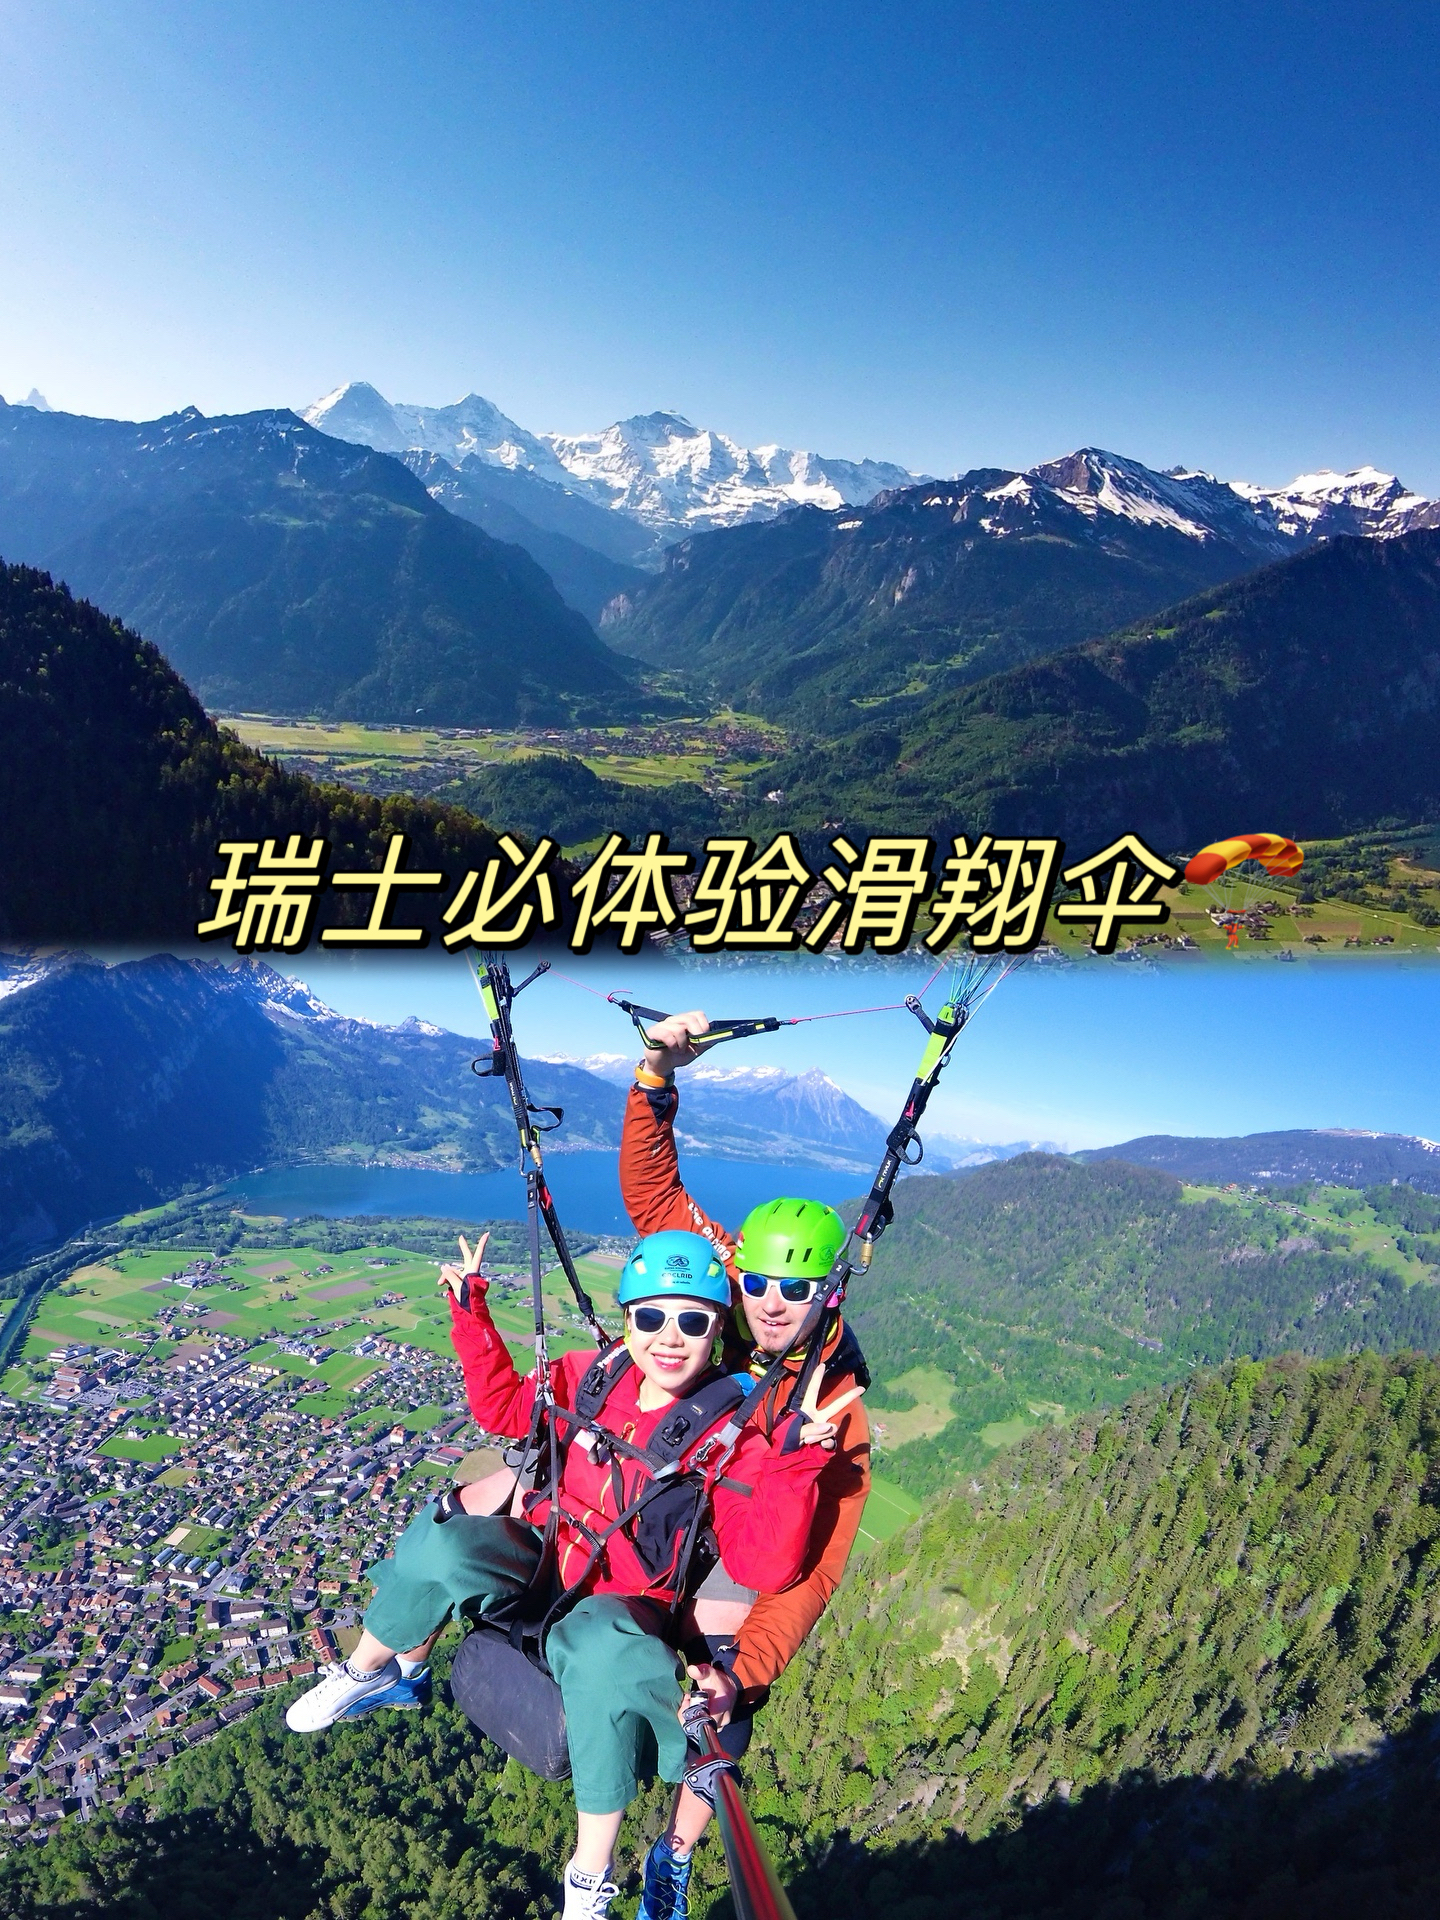 春天去一次瑞士🇨🇭玩一次滑翔伞🪂吧